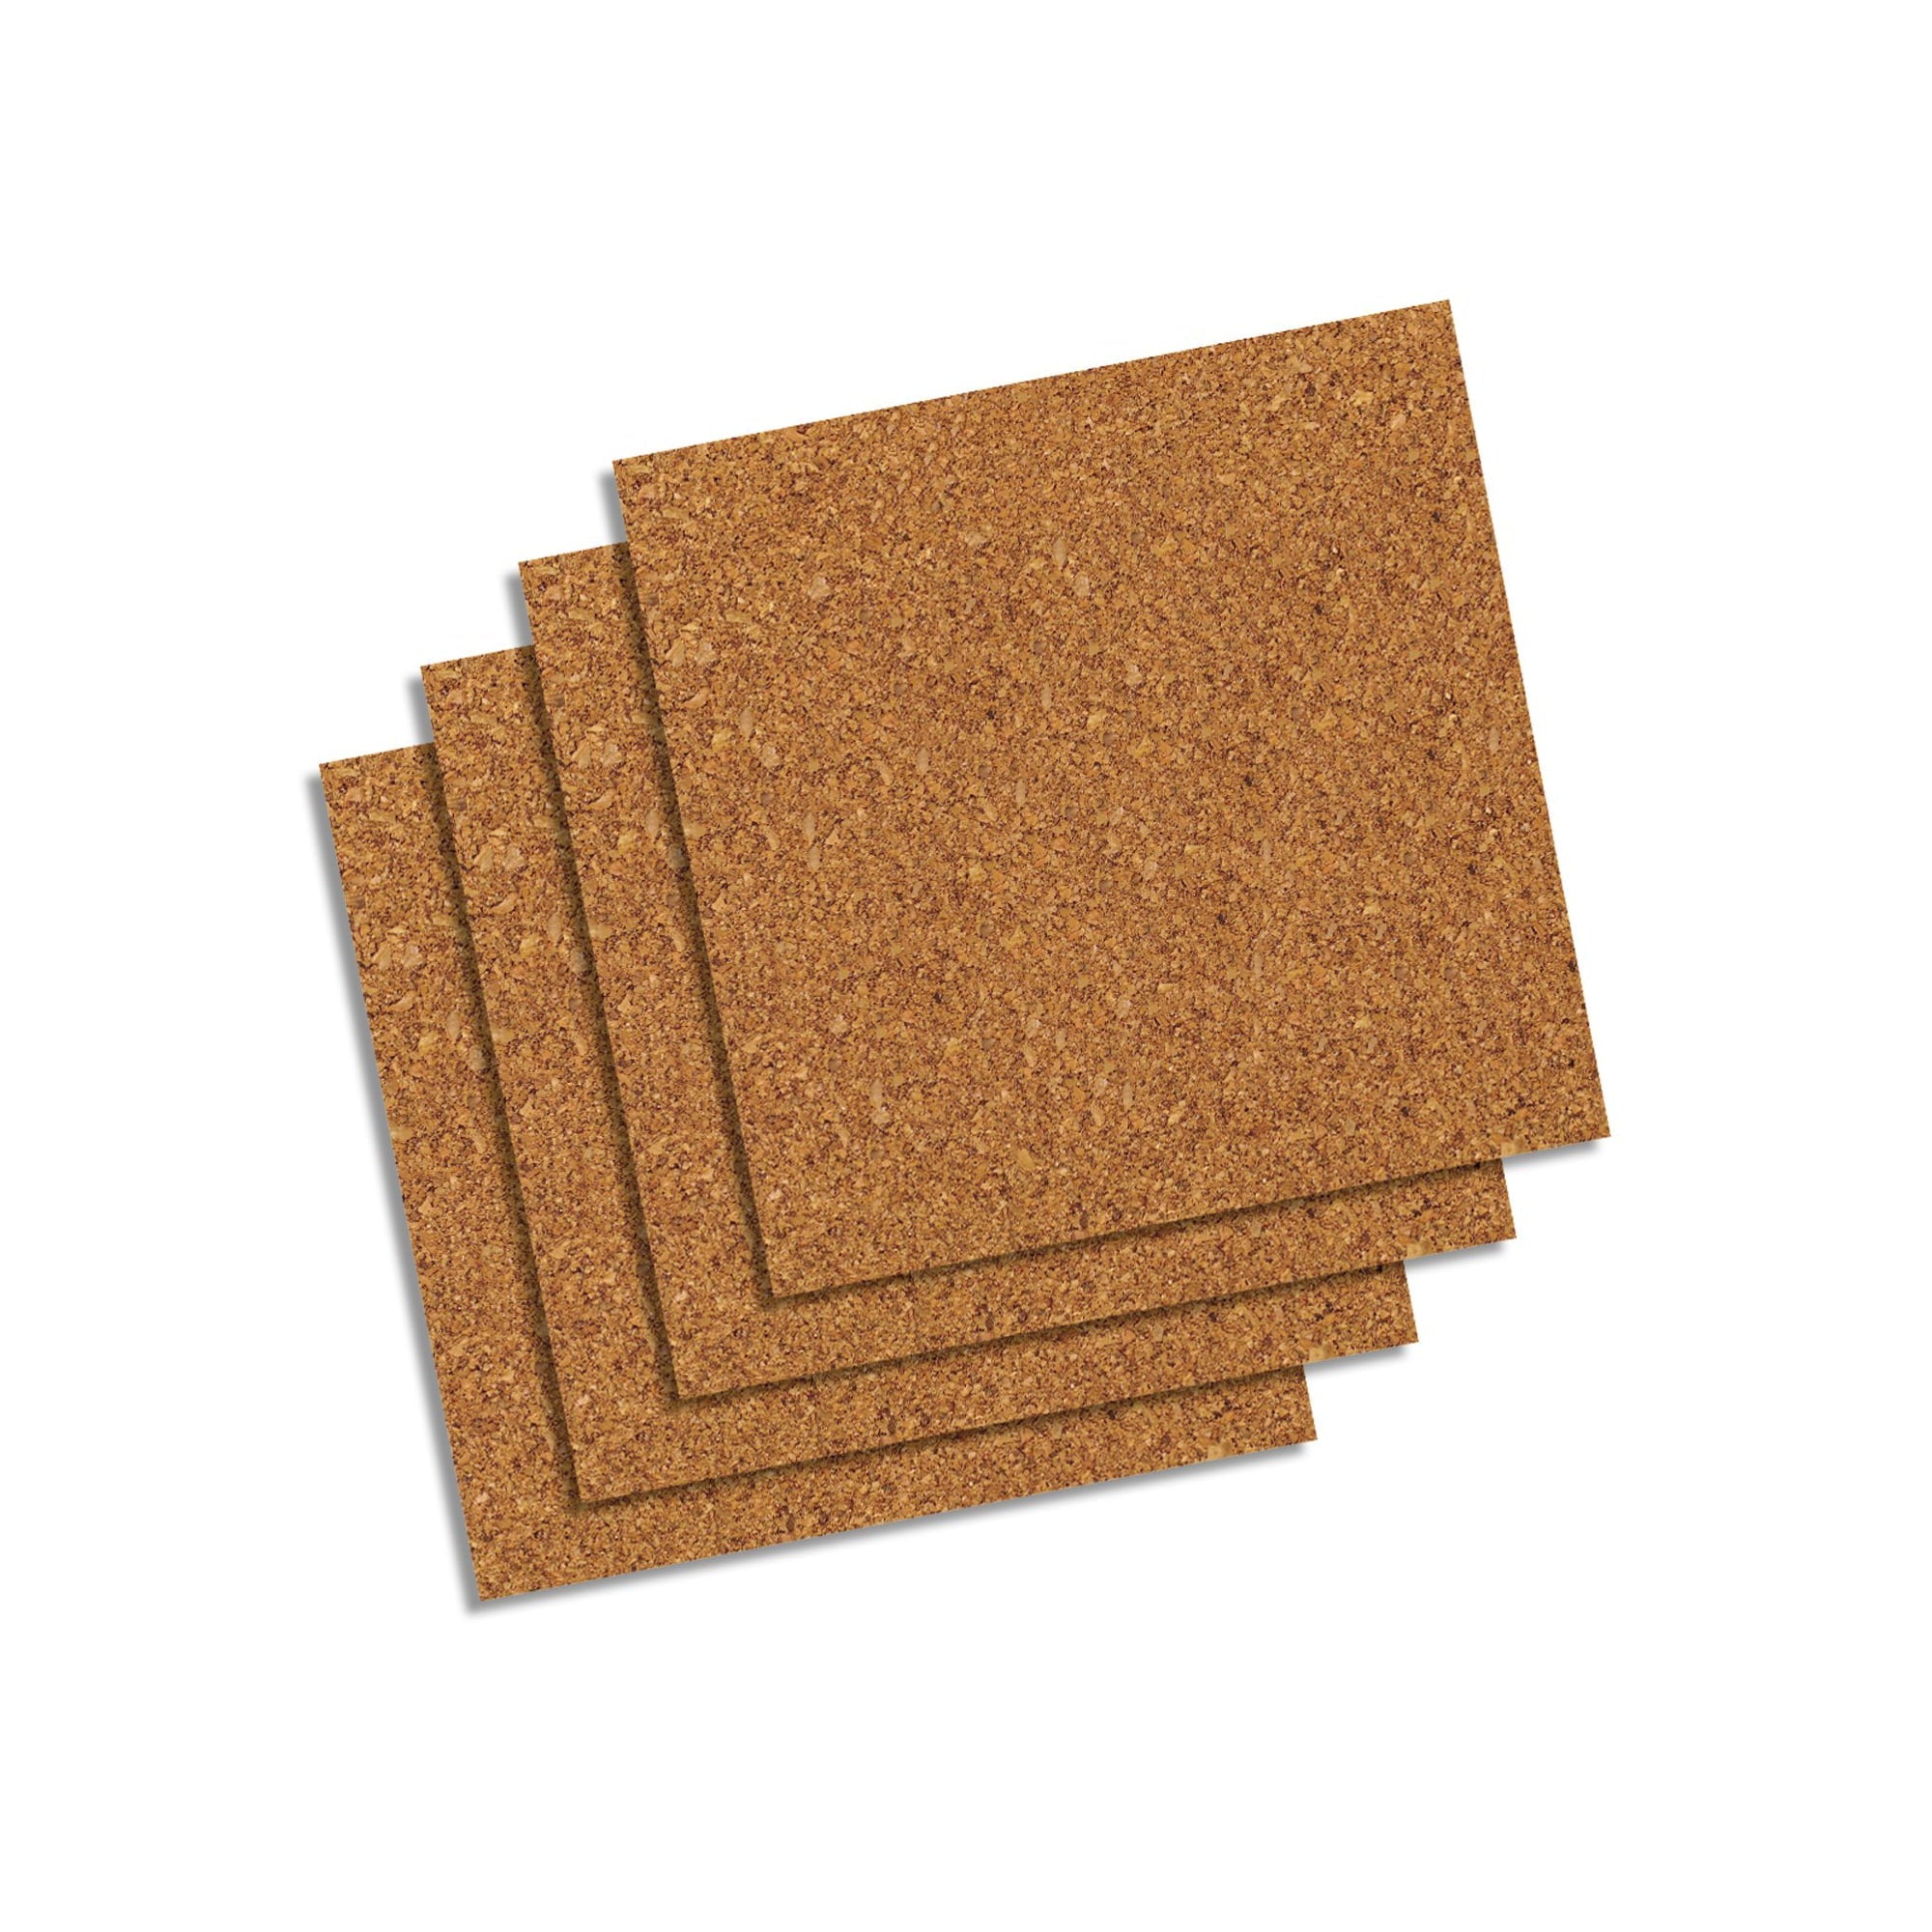 Frameless Natural Cork Tiles, 4-Pack - Bargainwizz